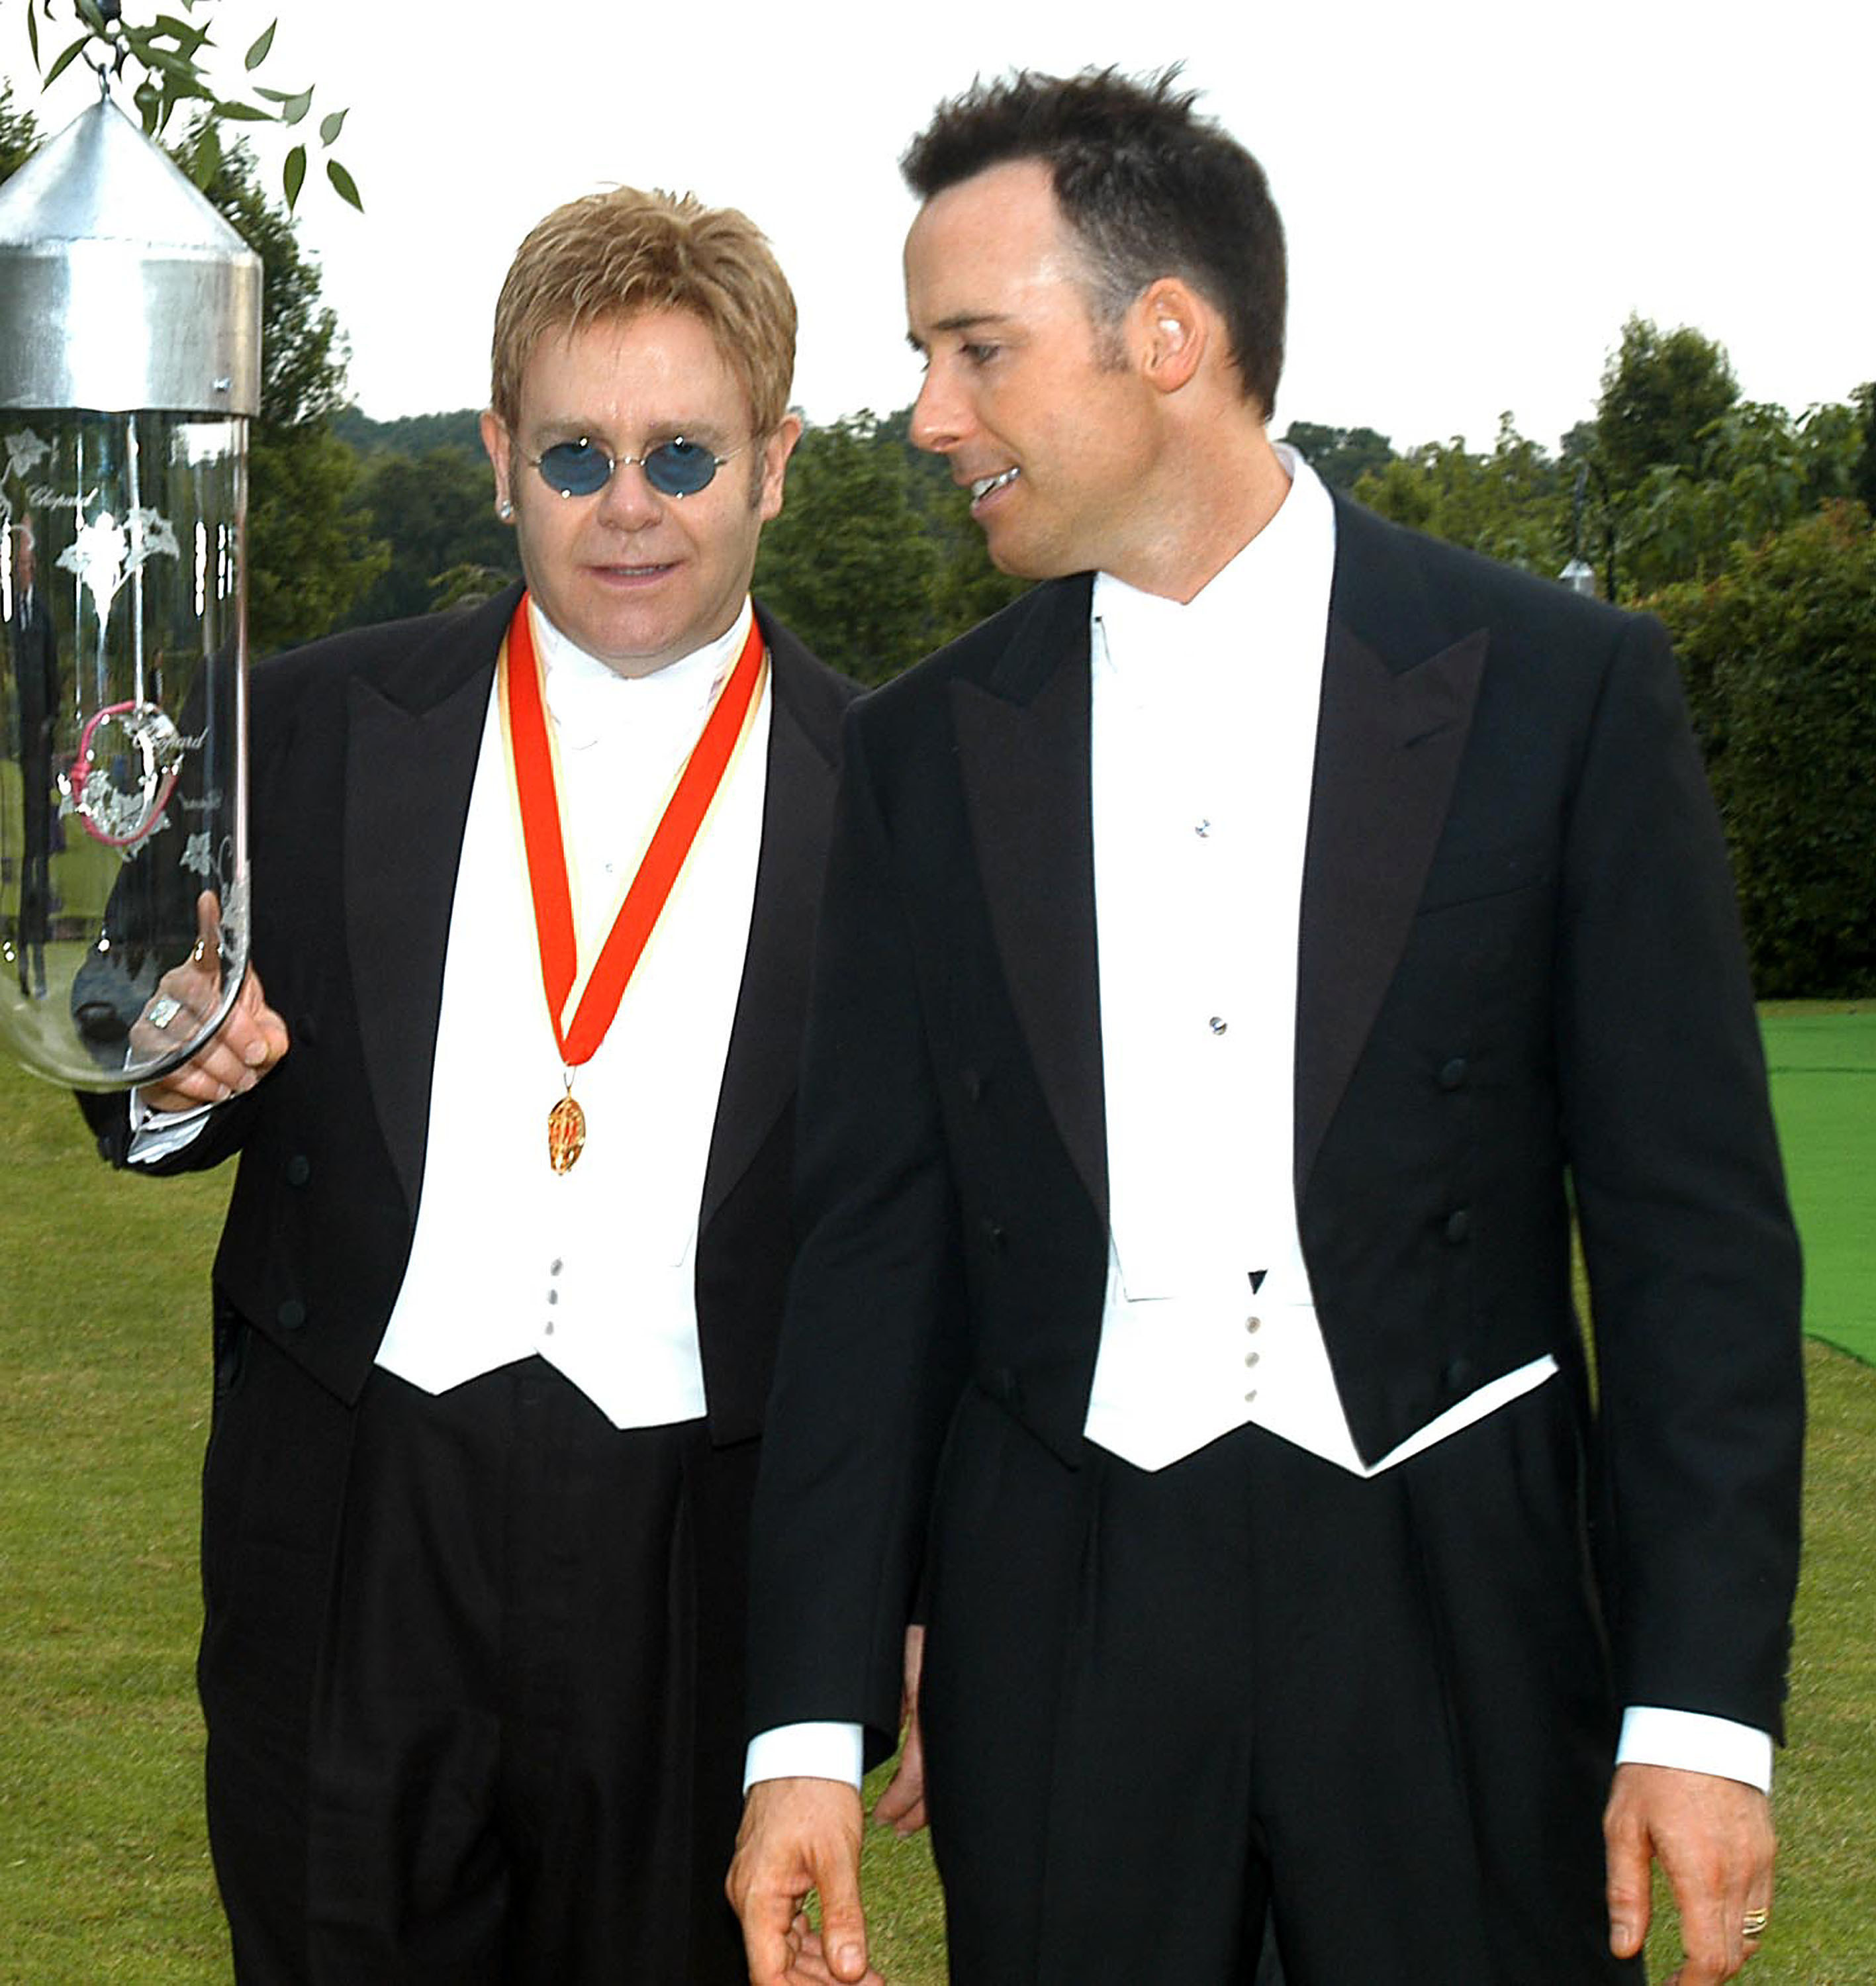 Elton John and David Furnish